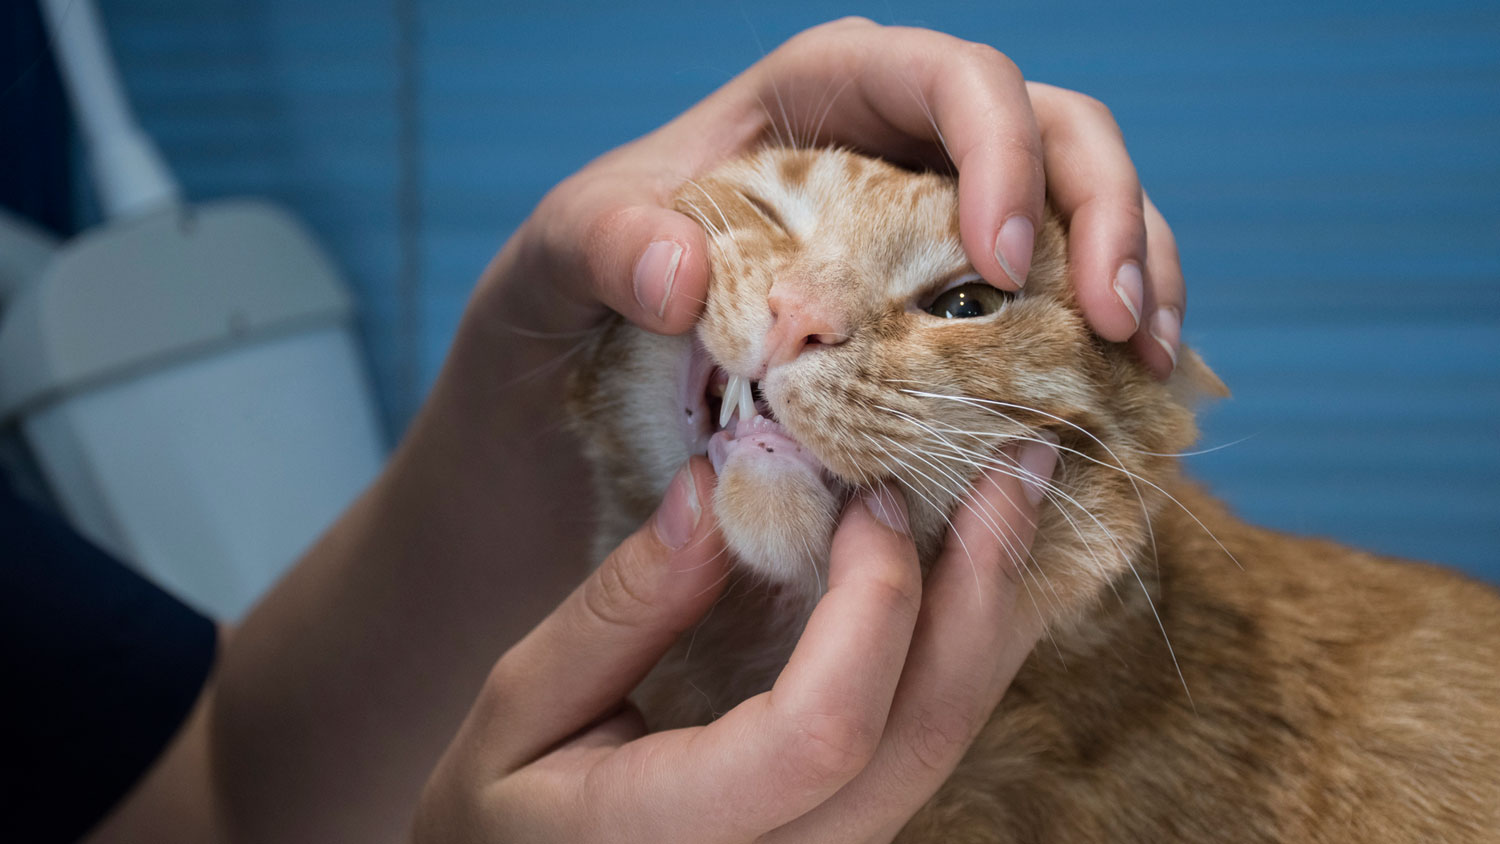 Dientes de gato: un gato al que le examinan los dientes